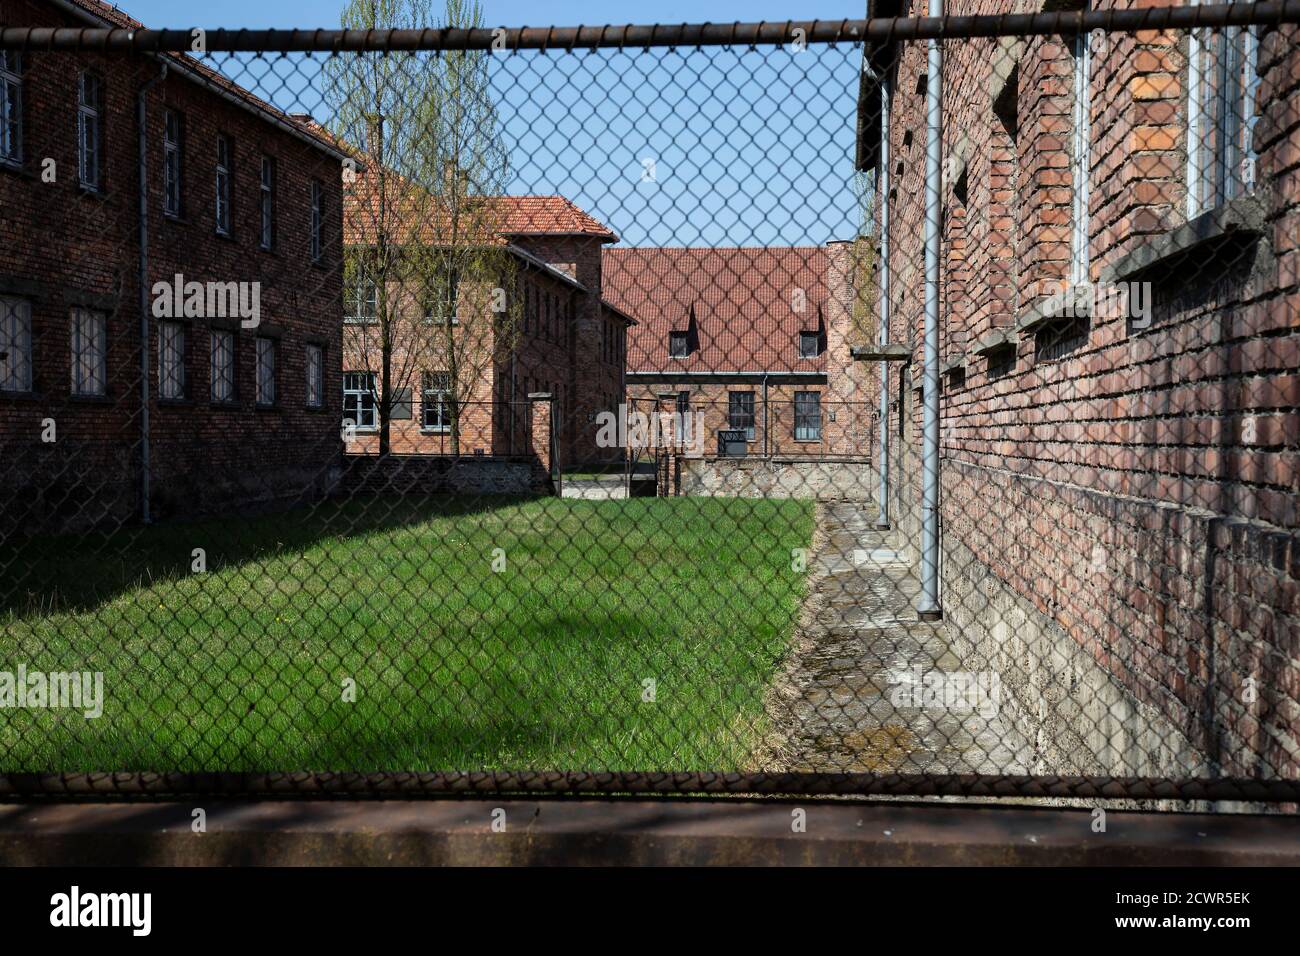 Vista esterna attraverso la recinzione della concentrazione di Auschwitz Birkenau campo in Polonia un ricordo duraturo delle atrocità di guerra naziste Durante la seconda guerra mondiale Foto Stock